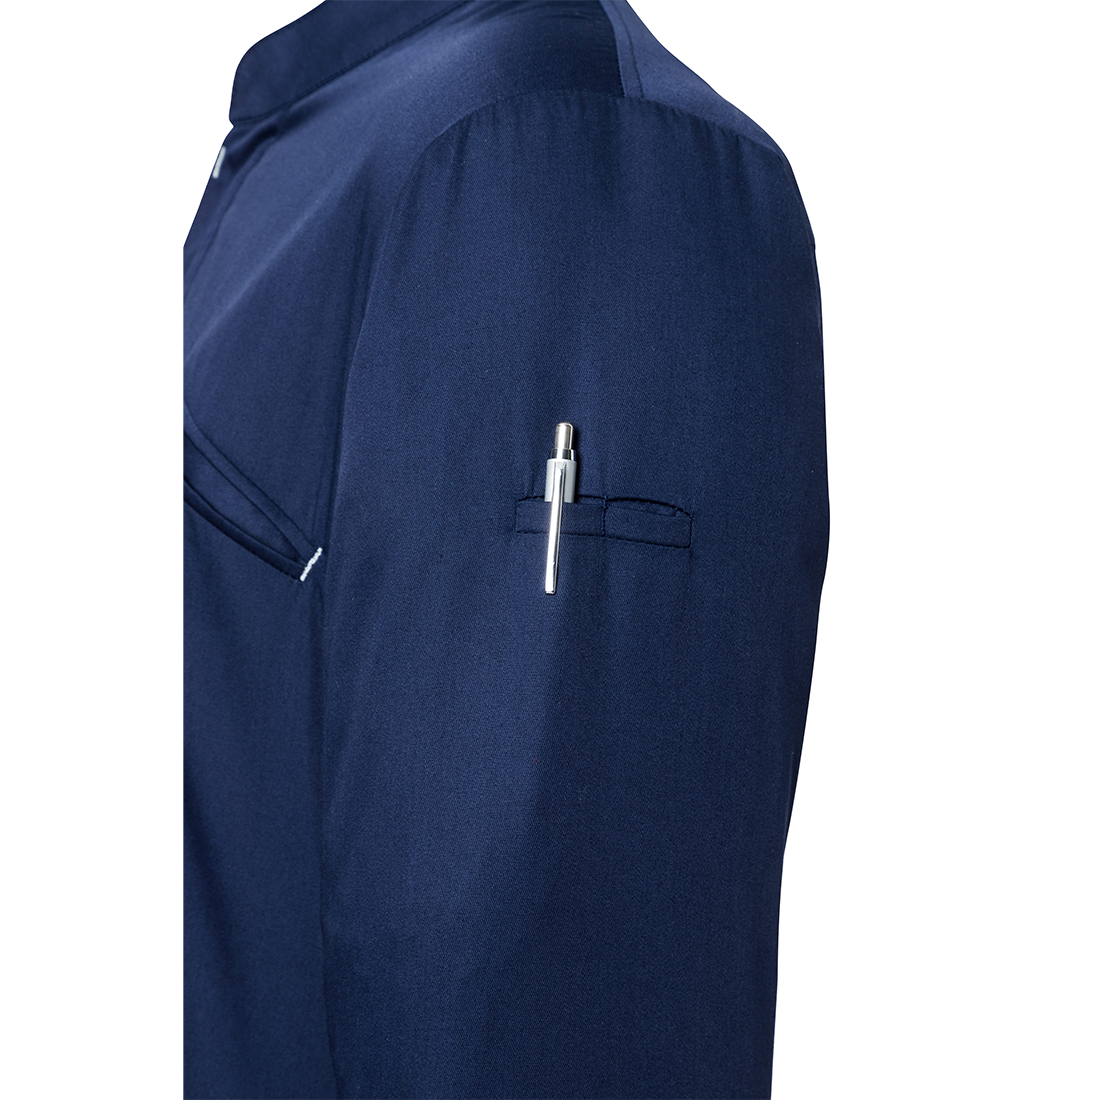 Chef Jacket Modern-Touch - Safetywear